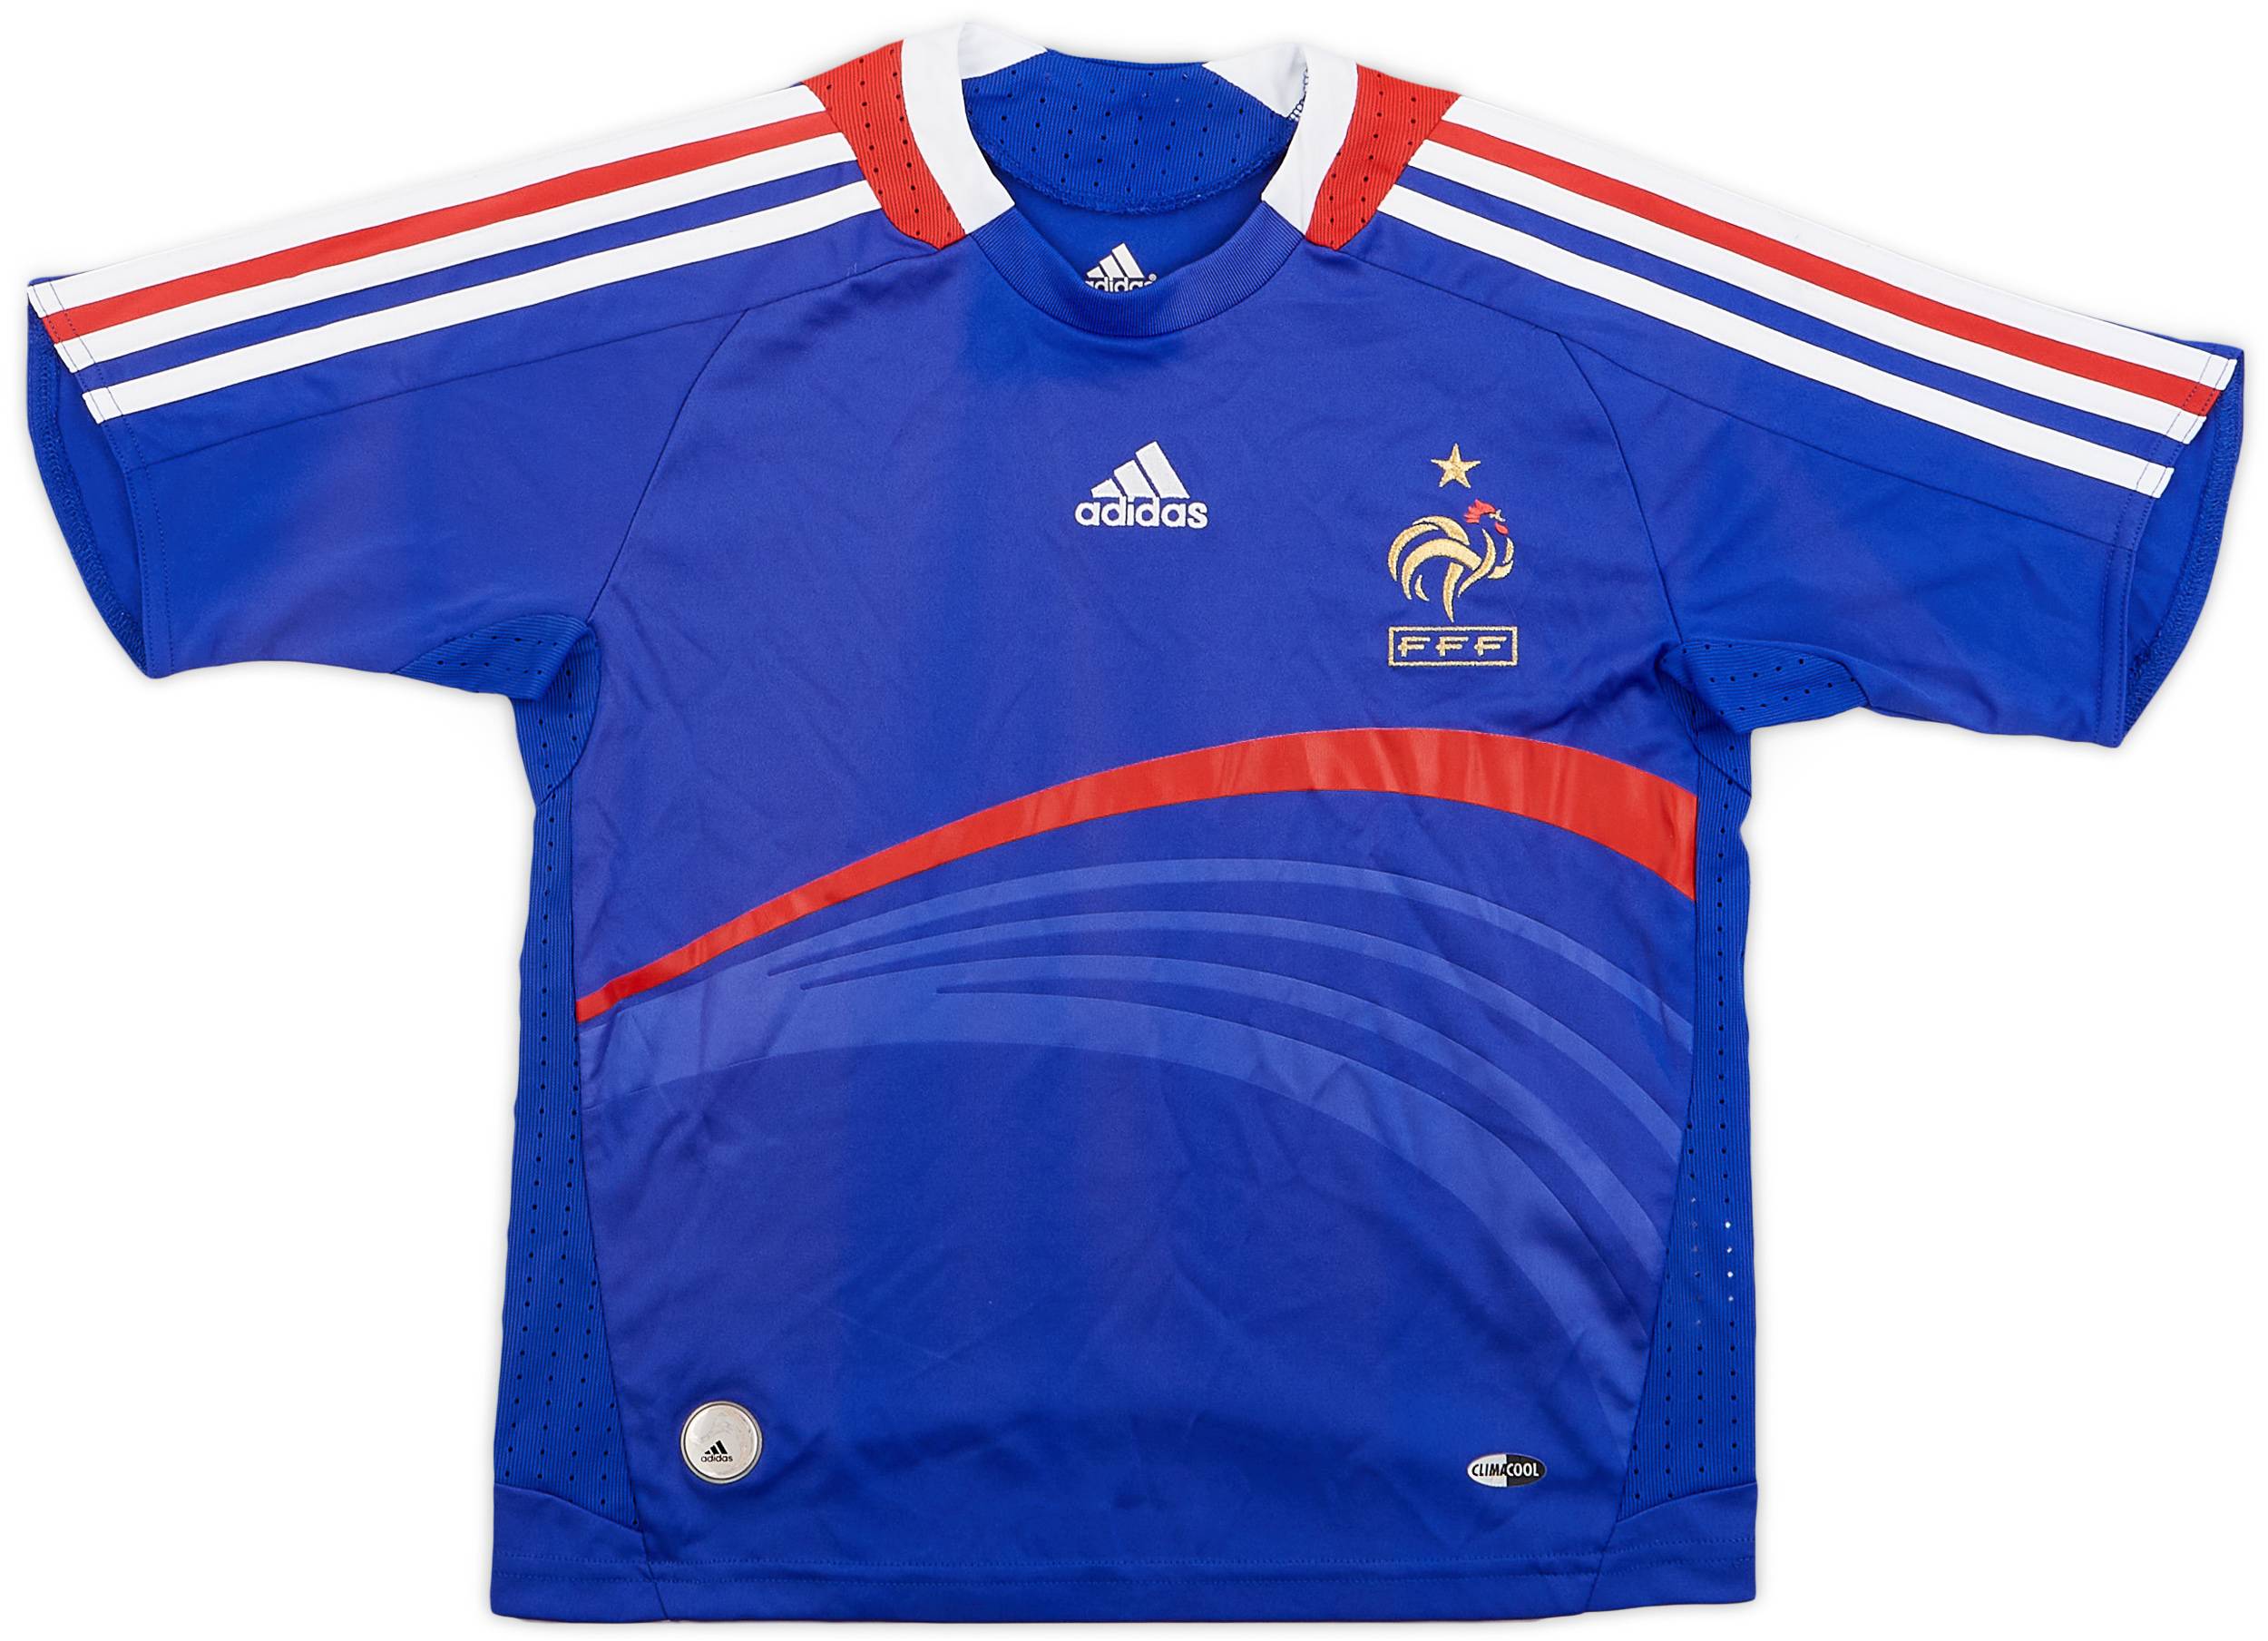 2007-08 France Home Shirt - 9/10 - (XS.Boys)